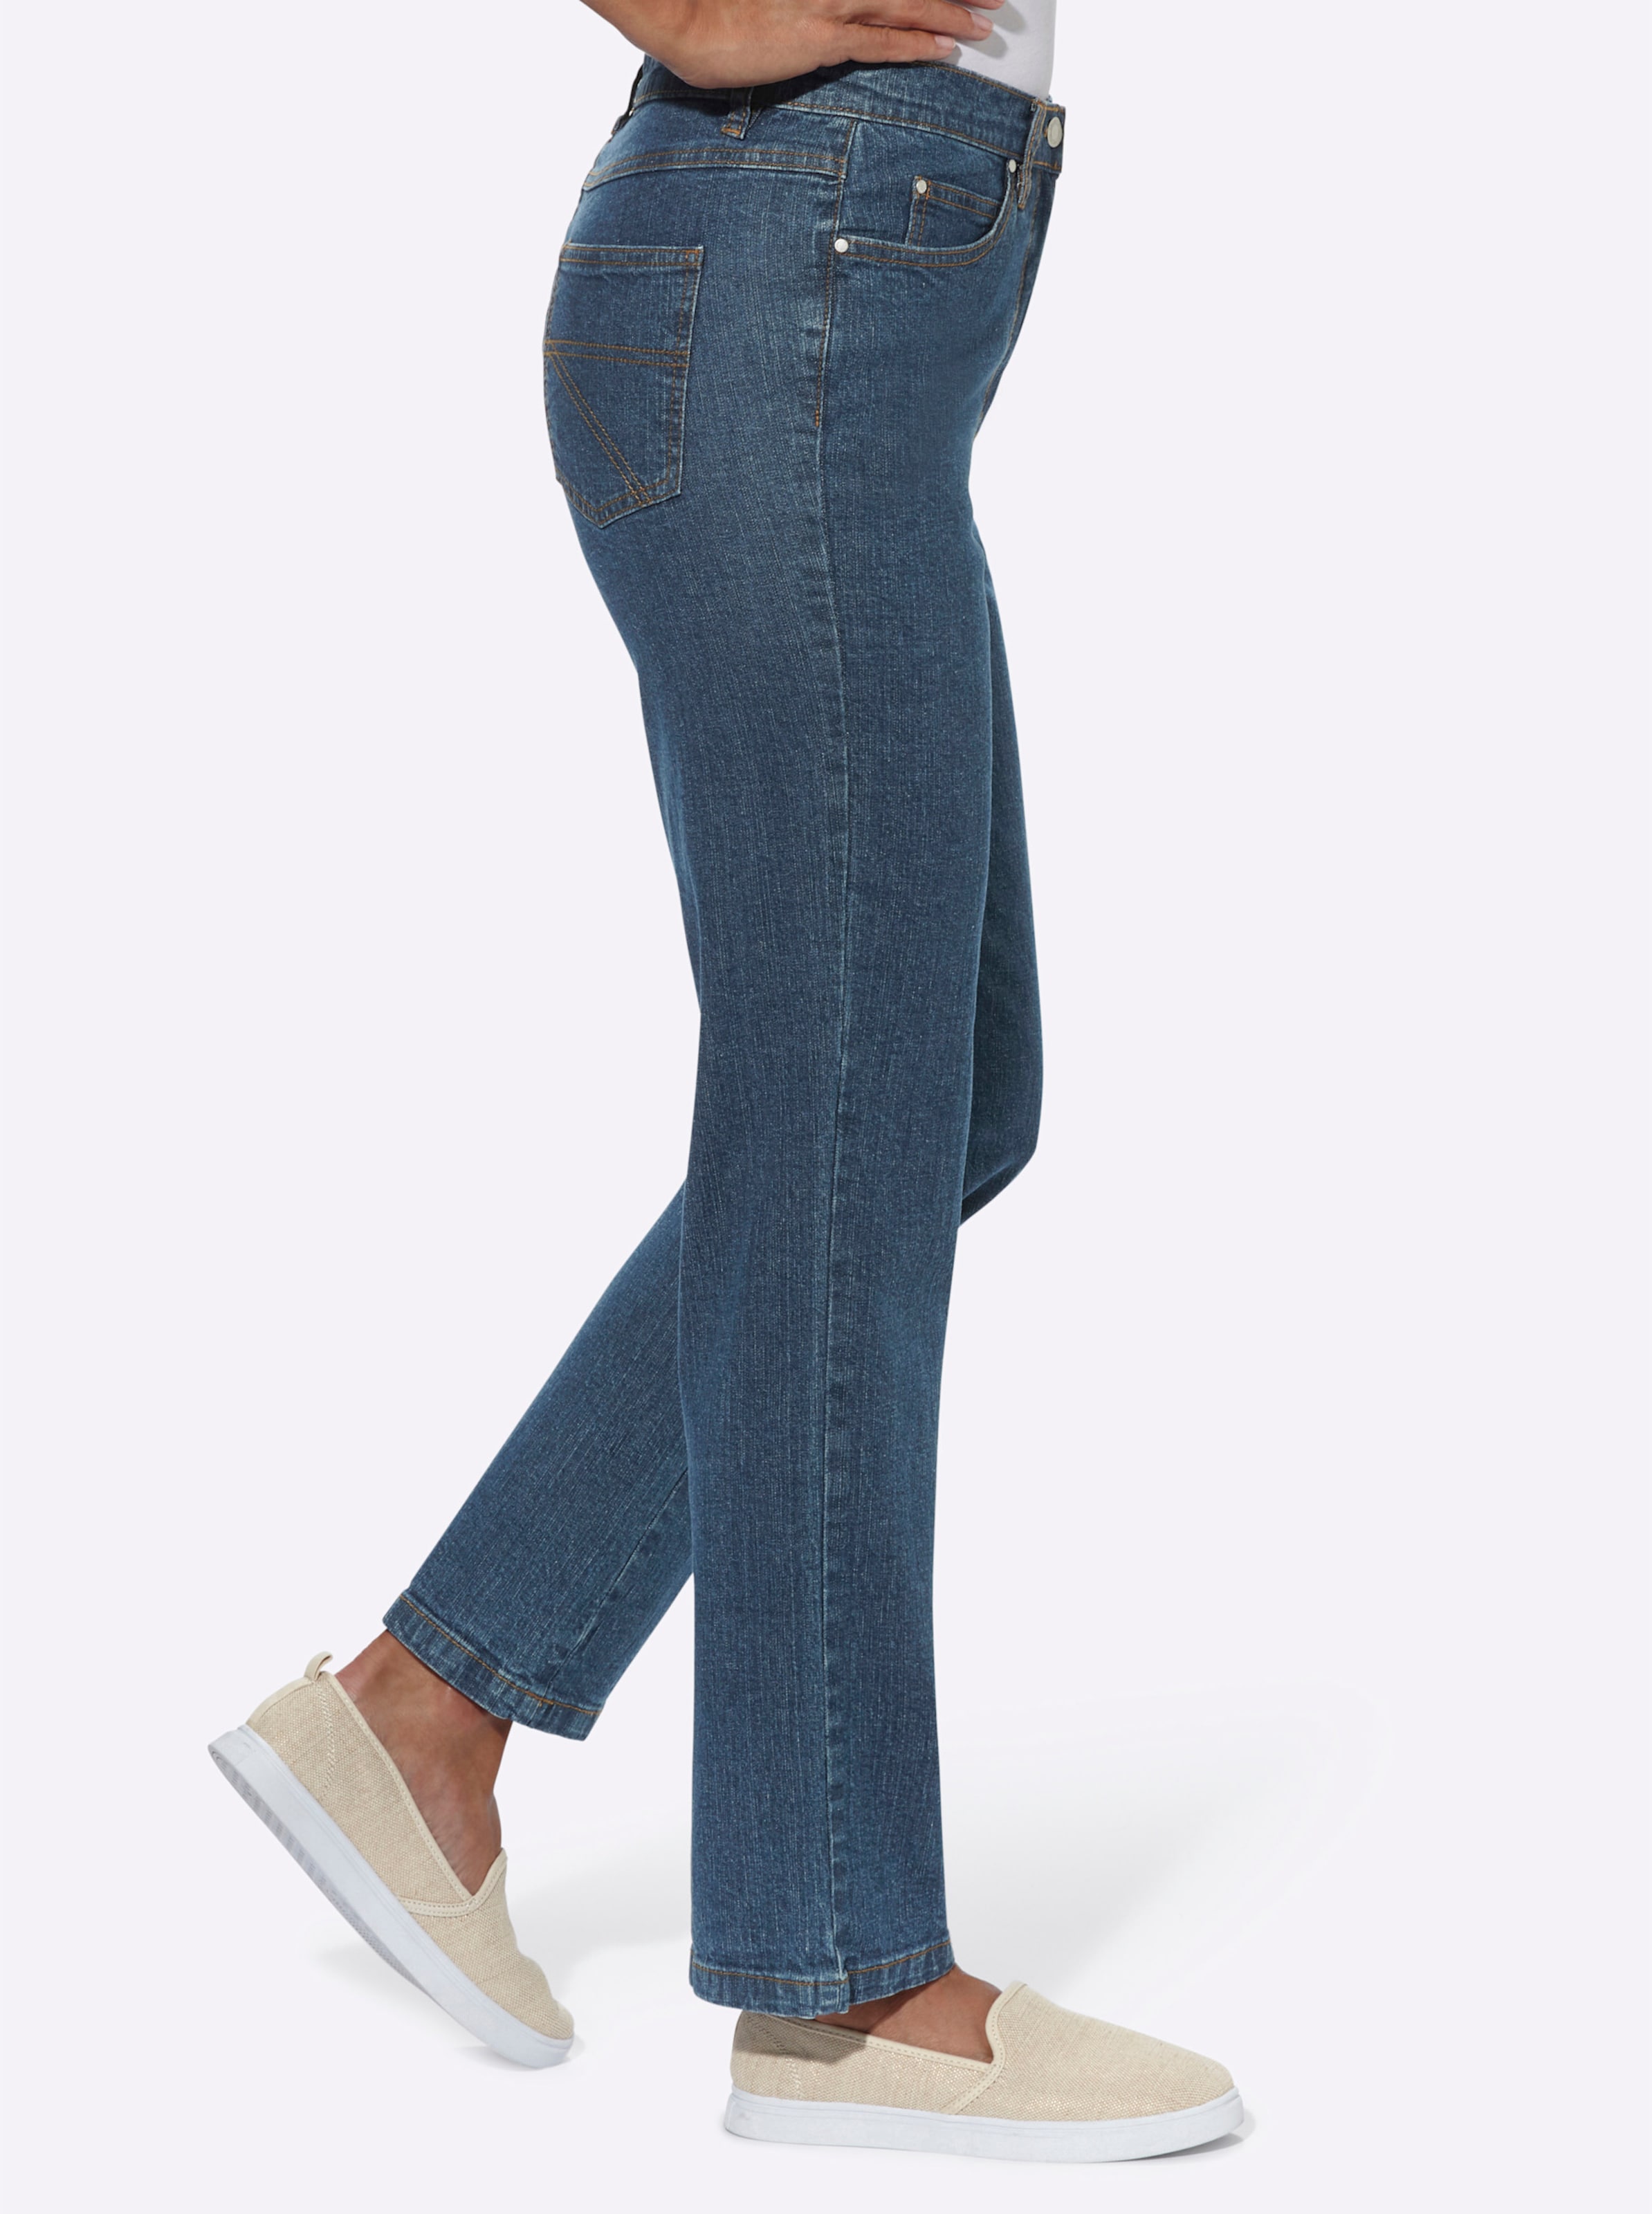 She Was günstig Kaufen-5-Pocket-Jeans in blue-stone-washed von heine. 5-Pocket-Jeans in blue-stone-washed von heine <![CDATA[Sitzt super dank Baumwoll-Stretch: Klassische 5-Pocket Jeans mit stiltypischen Kontrastnähten. Rückwärtiger Sattel für die optimale Passform. Fußwei